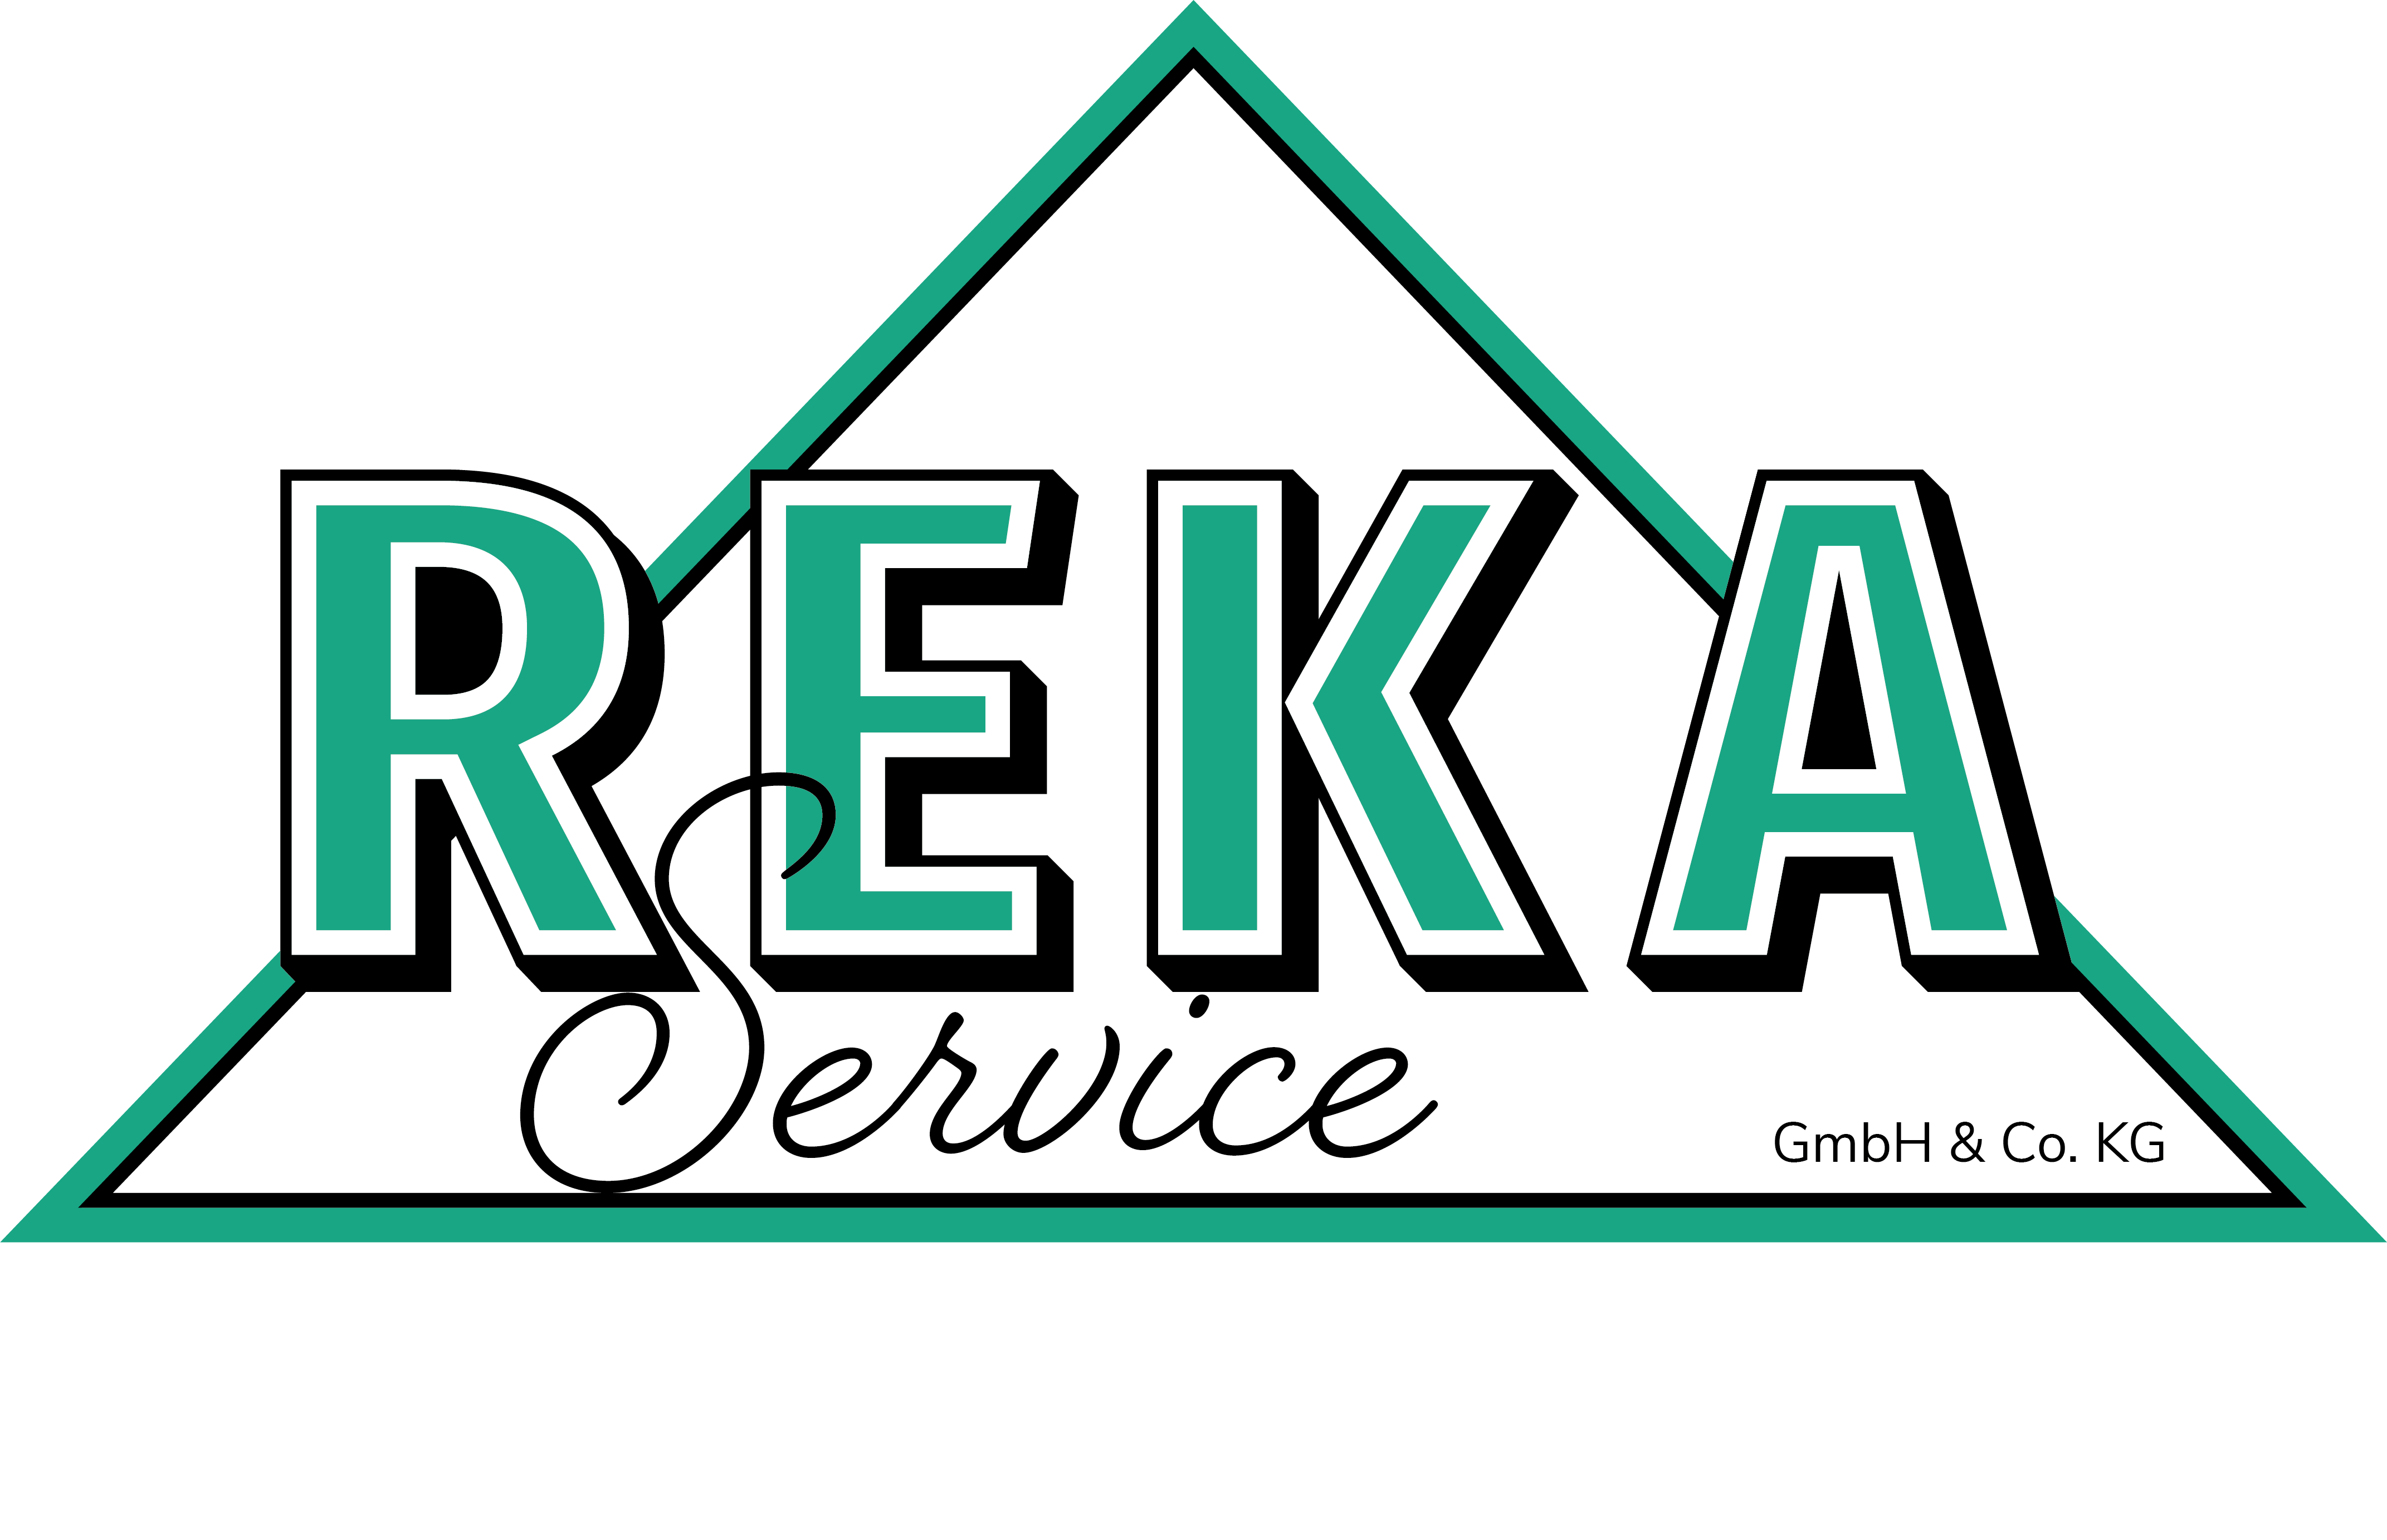 REKA Service GmbH & Co. KG